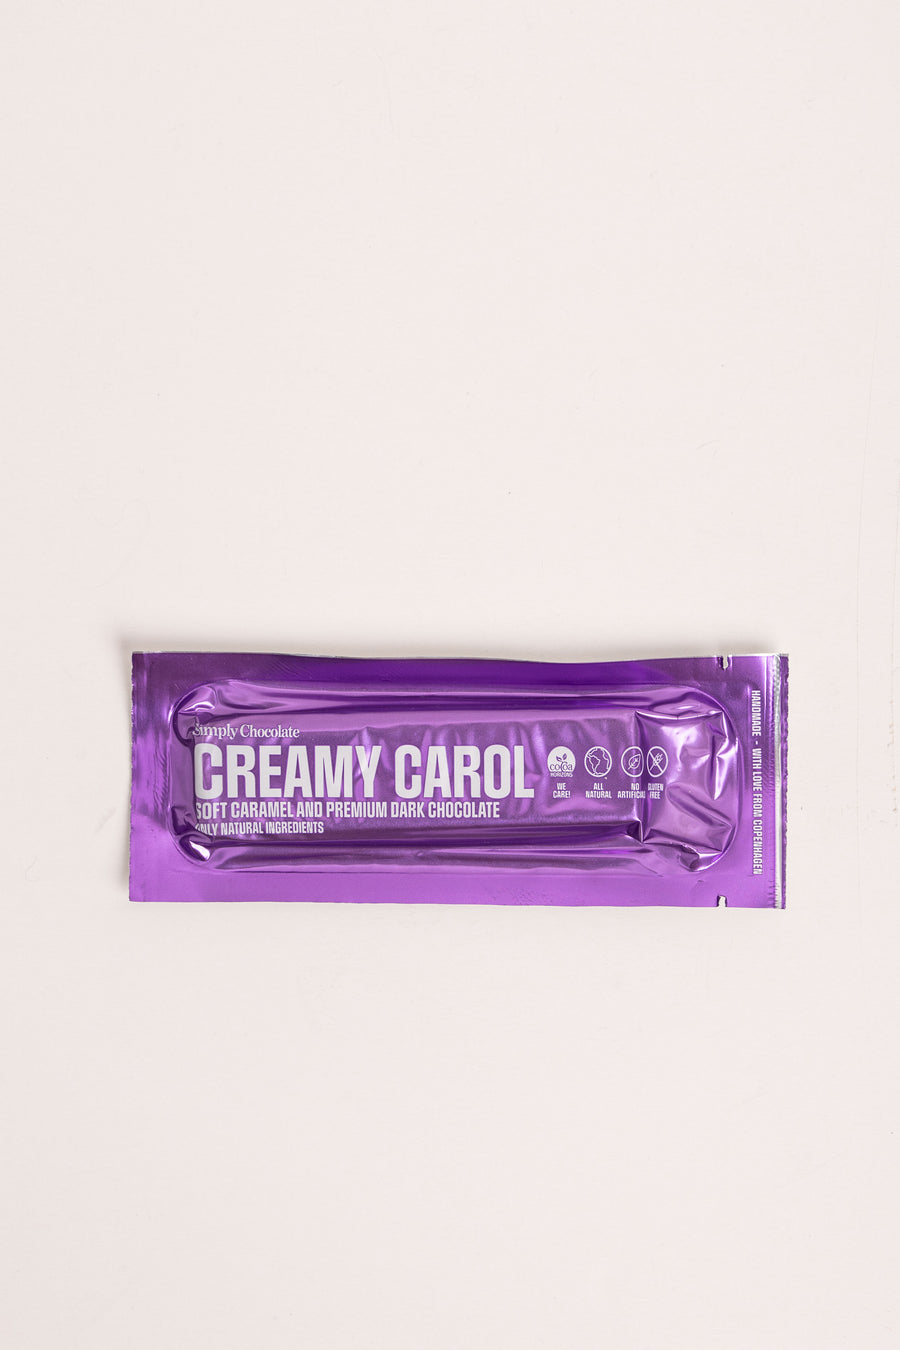 Simply Chocolate Creamy Carol